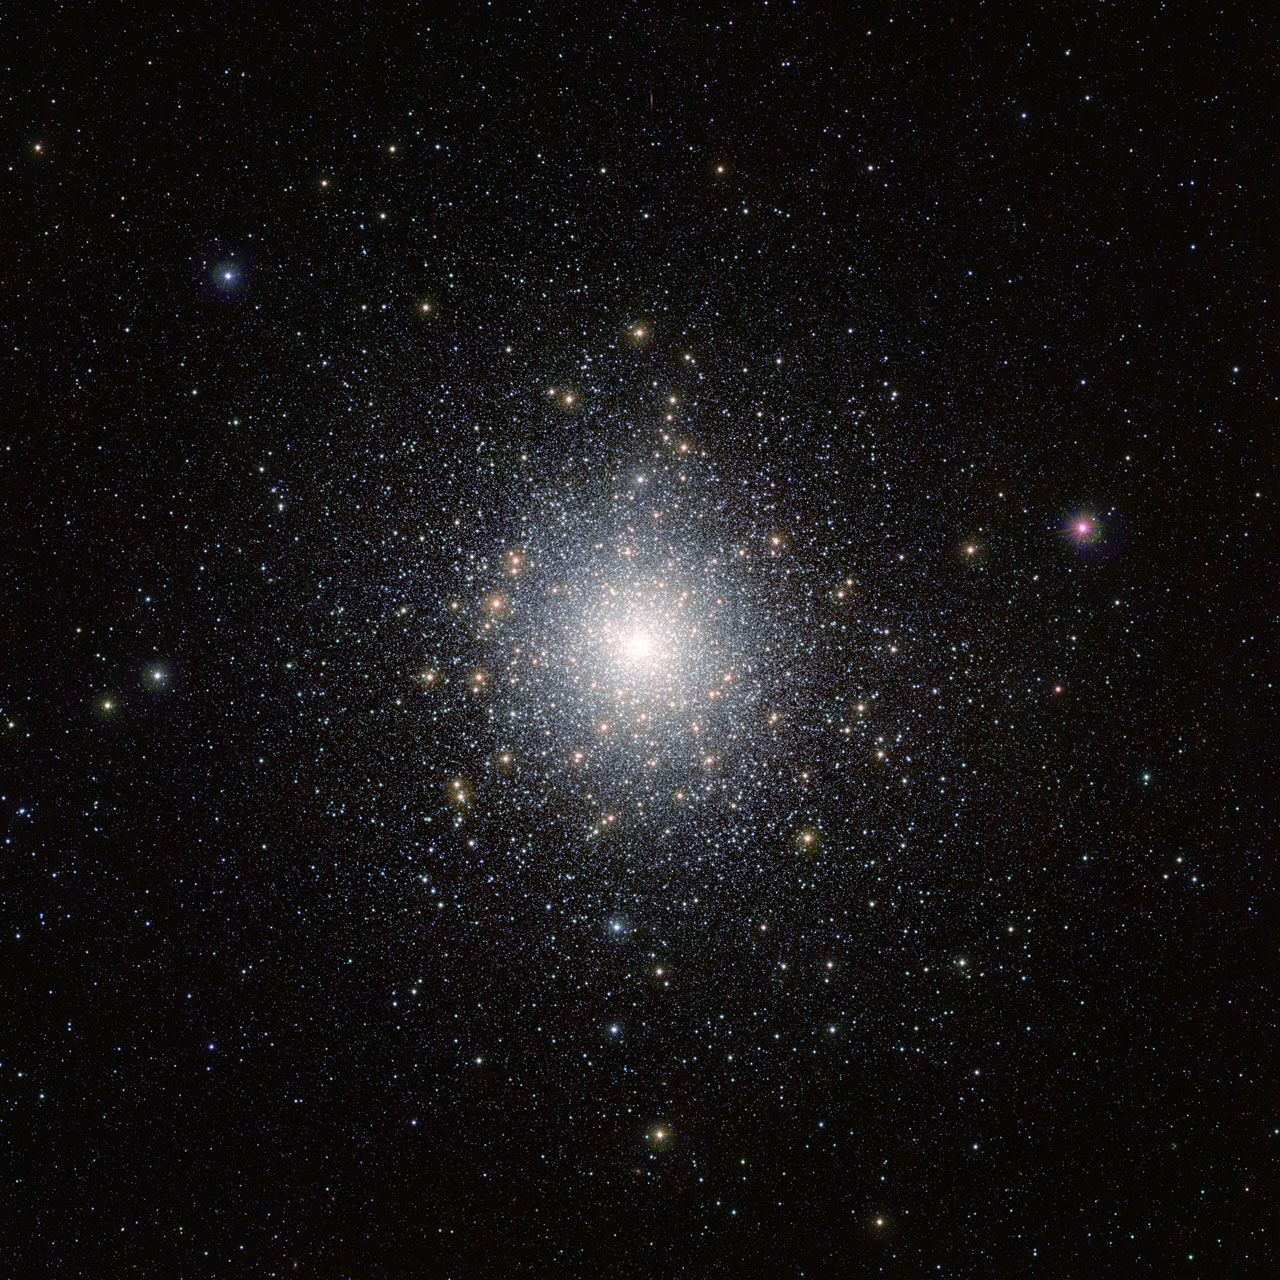 Cet amas d'étoiles lumineux est 47 Tucanae (NGC 104), montré ici sur une image réalisée par le télescope Vista (Visible and Infrared Survey Telescope for Astronomy) de l'ESO, à l'observatoire de Paranal, au Chili. Cet amas se trouve à environ 15.000 années-lumière de la Terre et contient des millions d'étoiles dont certaines sont très peu communes. Cette image a été prise dans le cadre de la campagne d'observation Vista Magellanic Cloud Survey, un projet dédié à la cartographie de la région des Nuages de Magellan, deux petites galaxies très proches de la Voie lactée. © ESO, M.-R. Cioni, Vista Magellanic Cloud Survey, Cambridge Astronomical Survey Unit